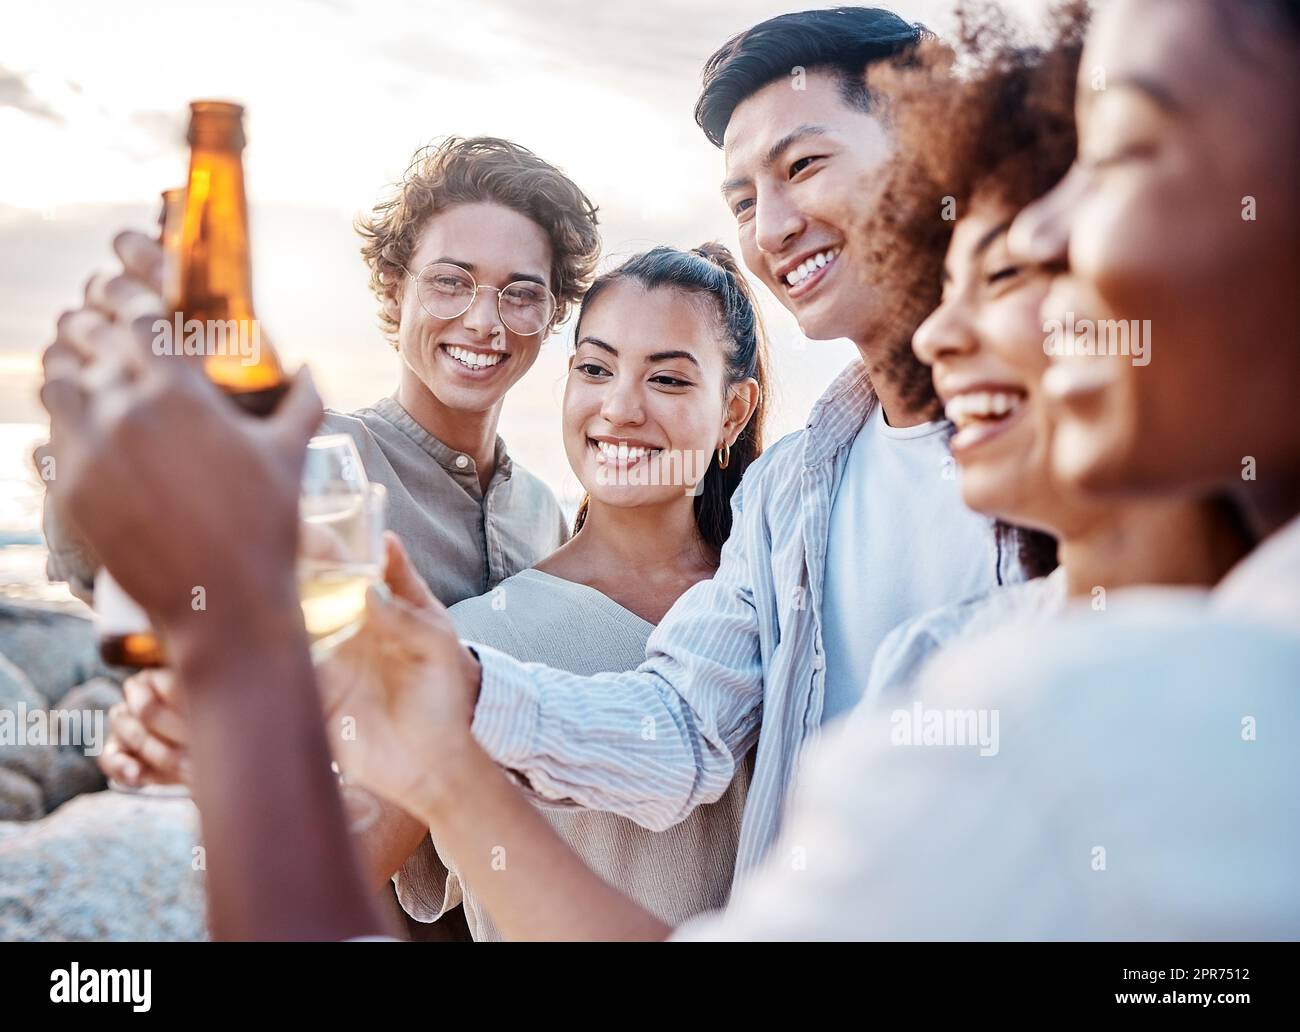 Eine Gruppe von Freunden genießt ihre Zeit zusammen und feiert mit einigen alkoholischen Getränken am Strand Stockfoto